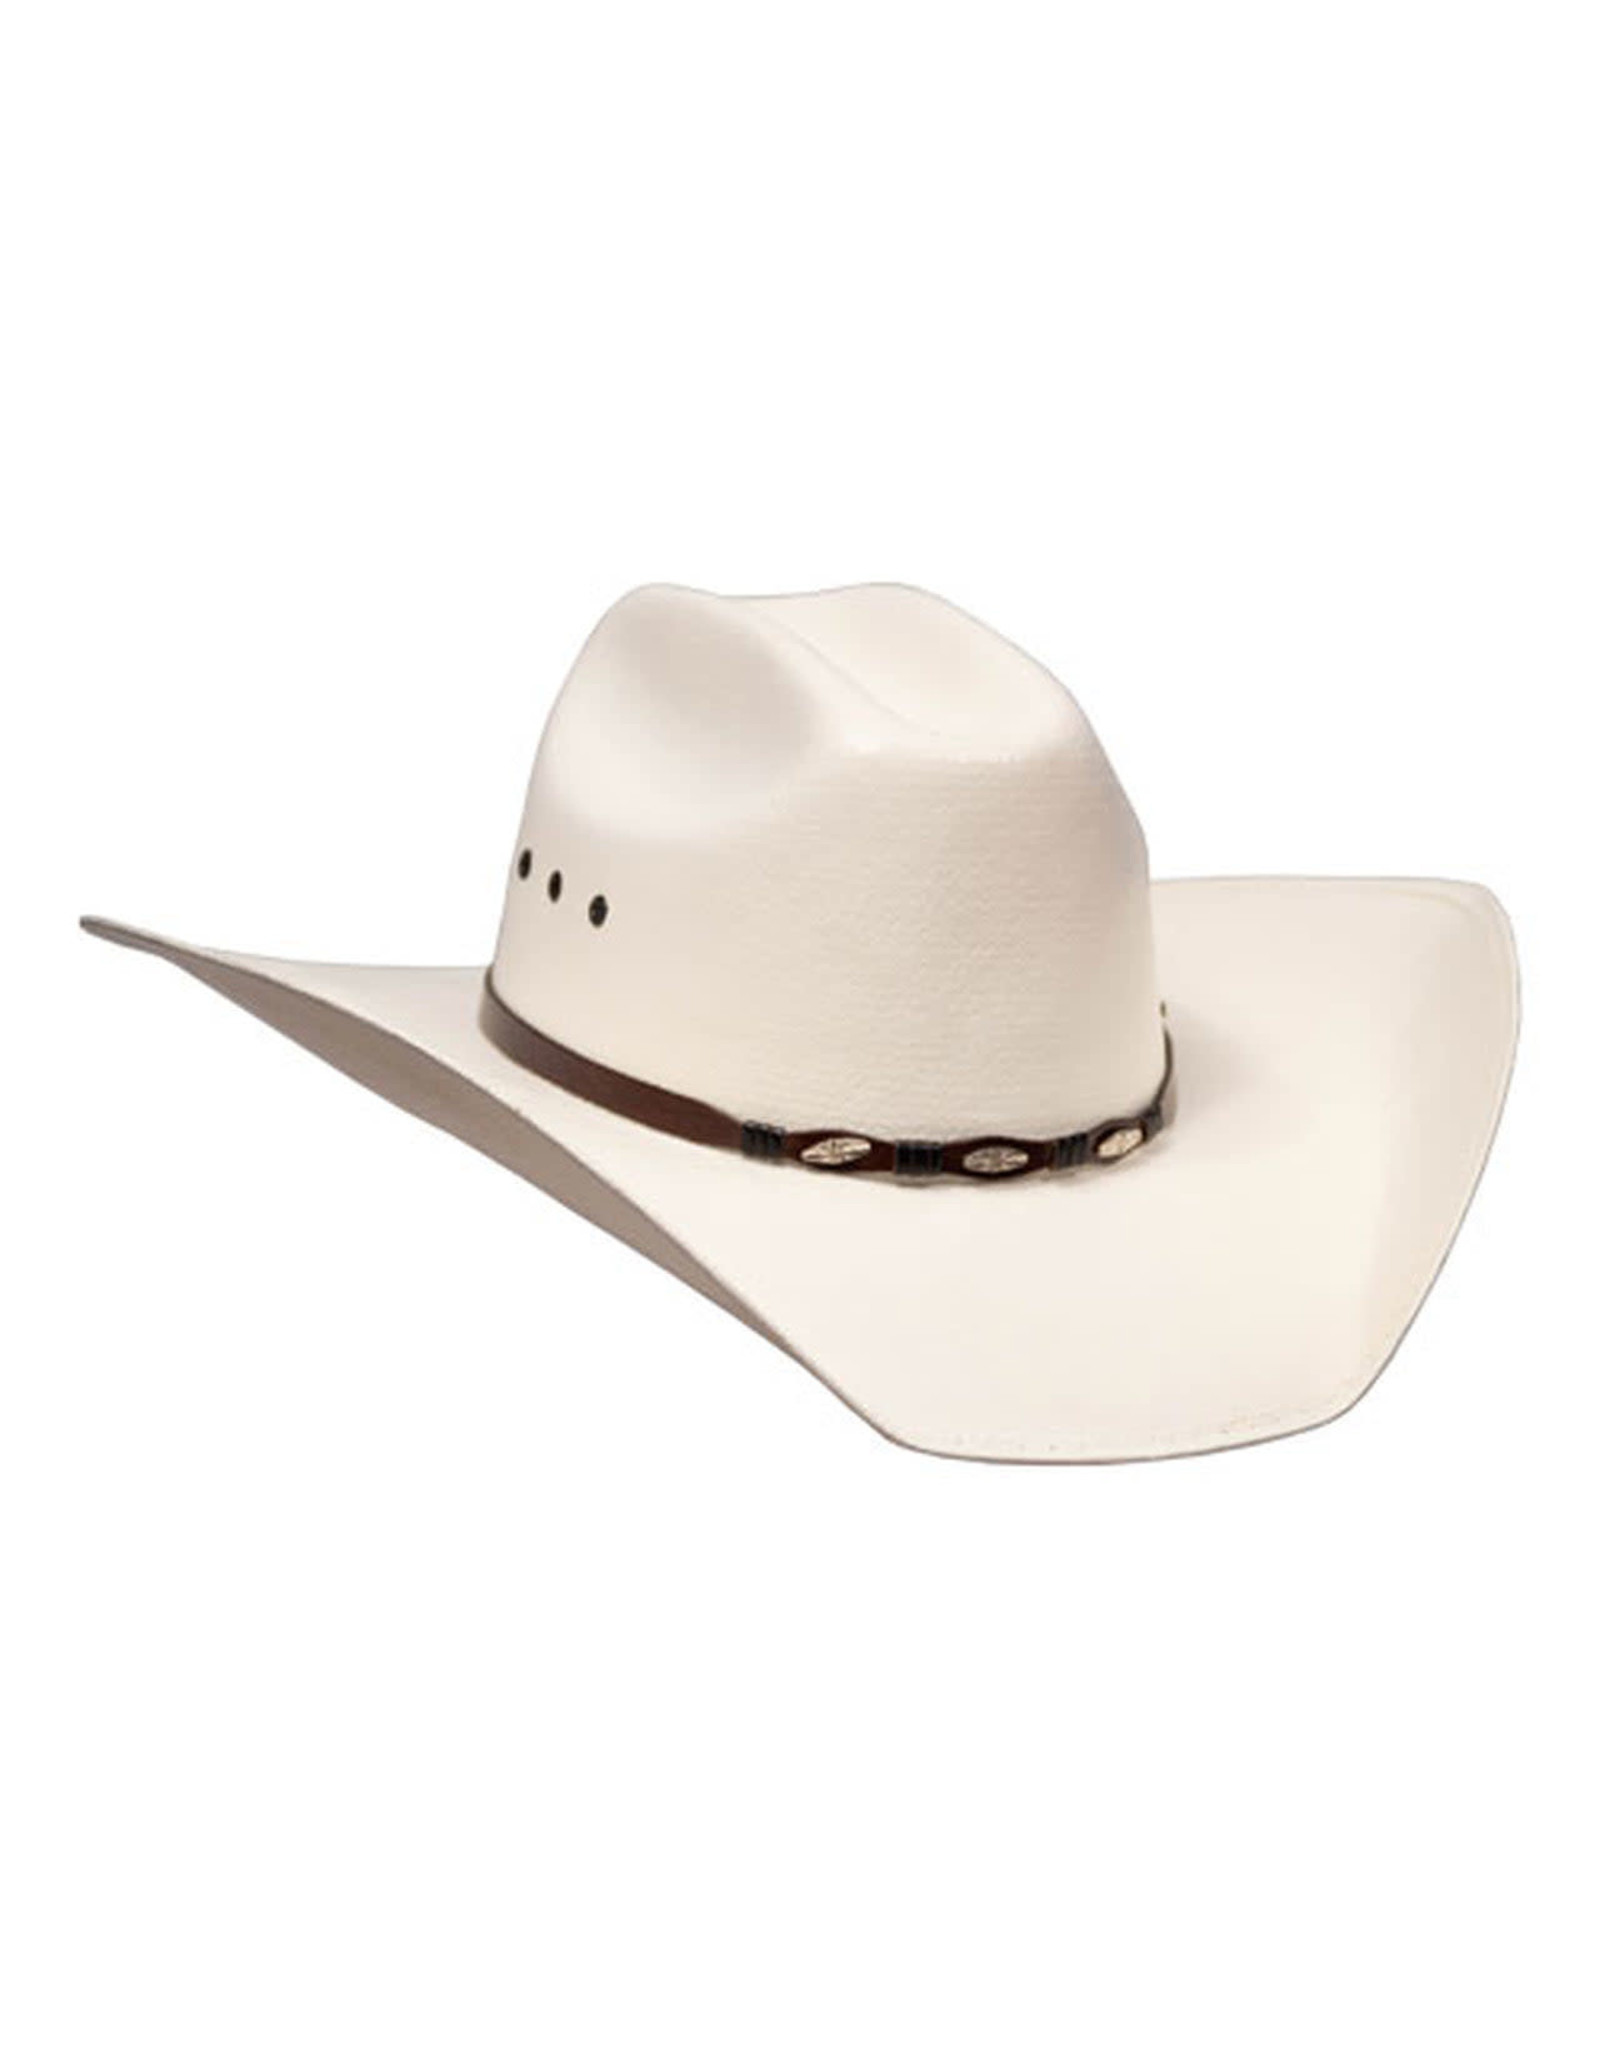 Bullhide Alamo Straw 0272 Cowboy Hat